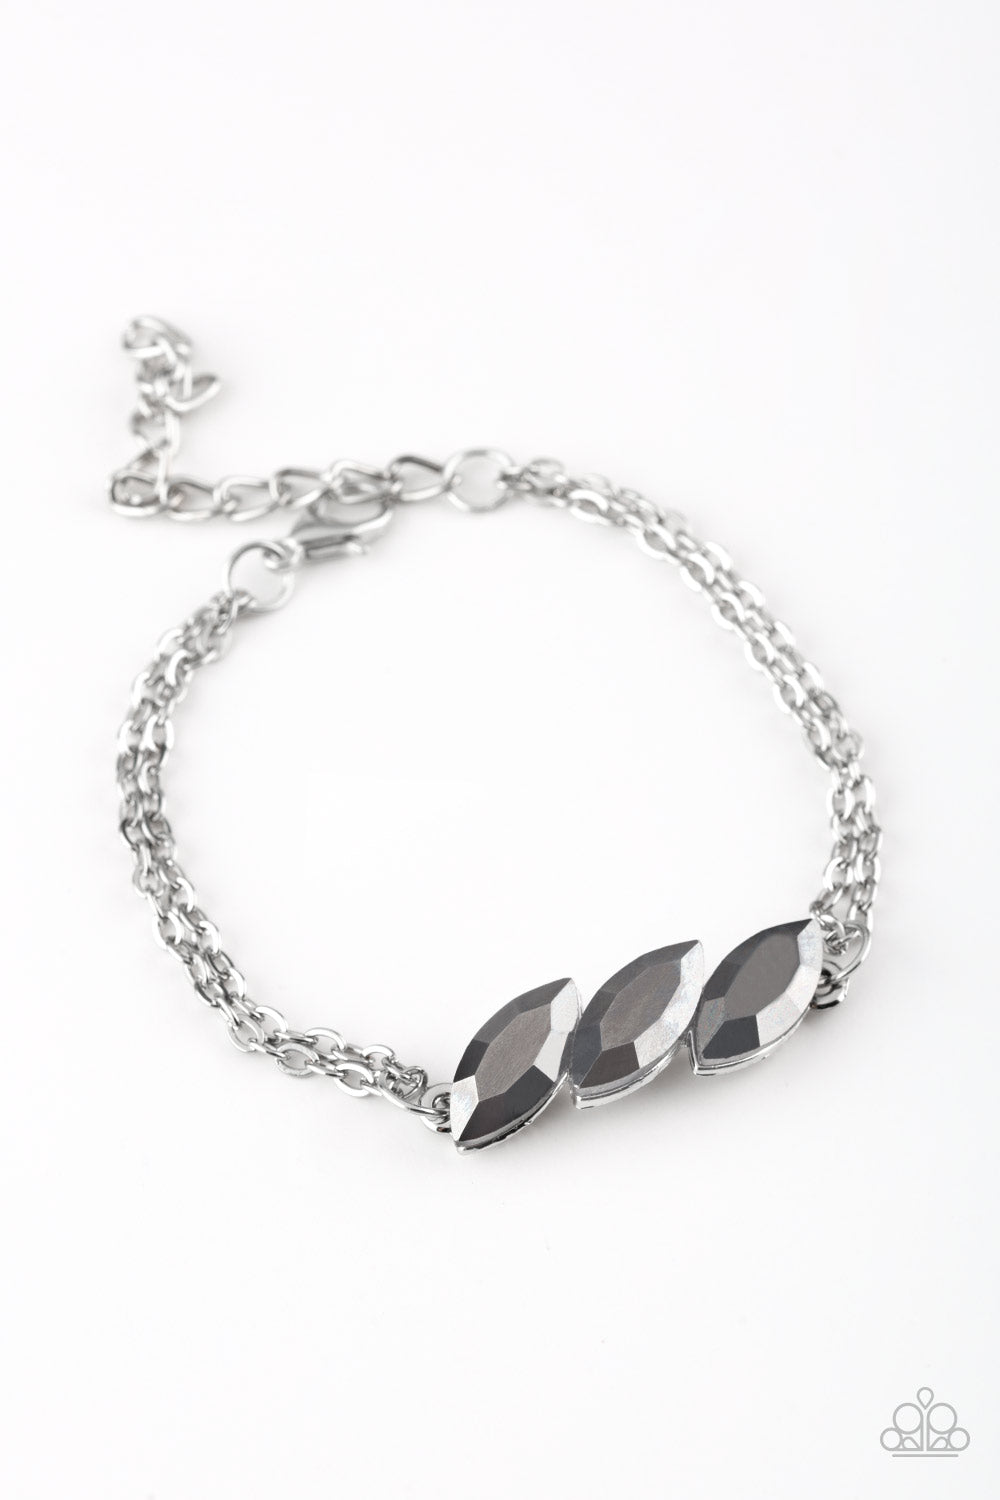 Pretty Priceless - Silver Bracelet freeshipping - JewLz4u Gemstone Gallery